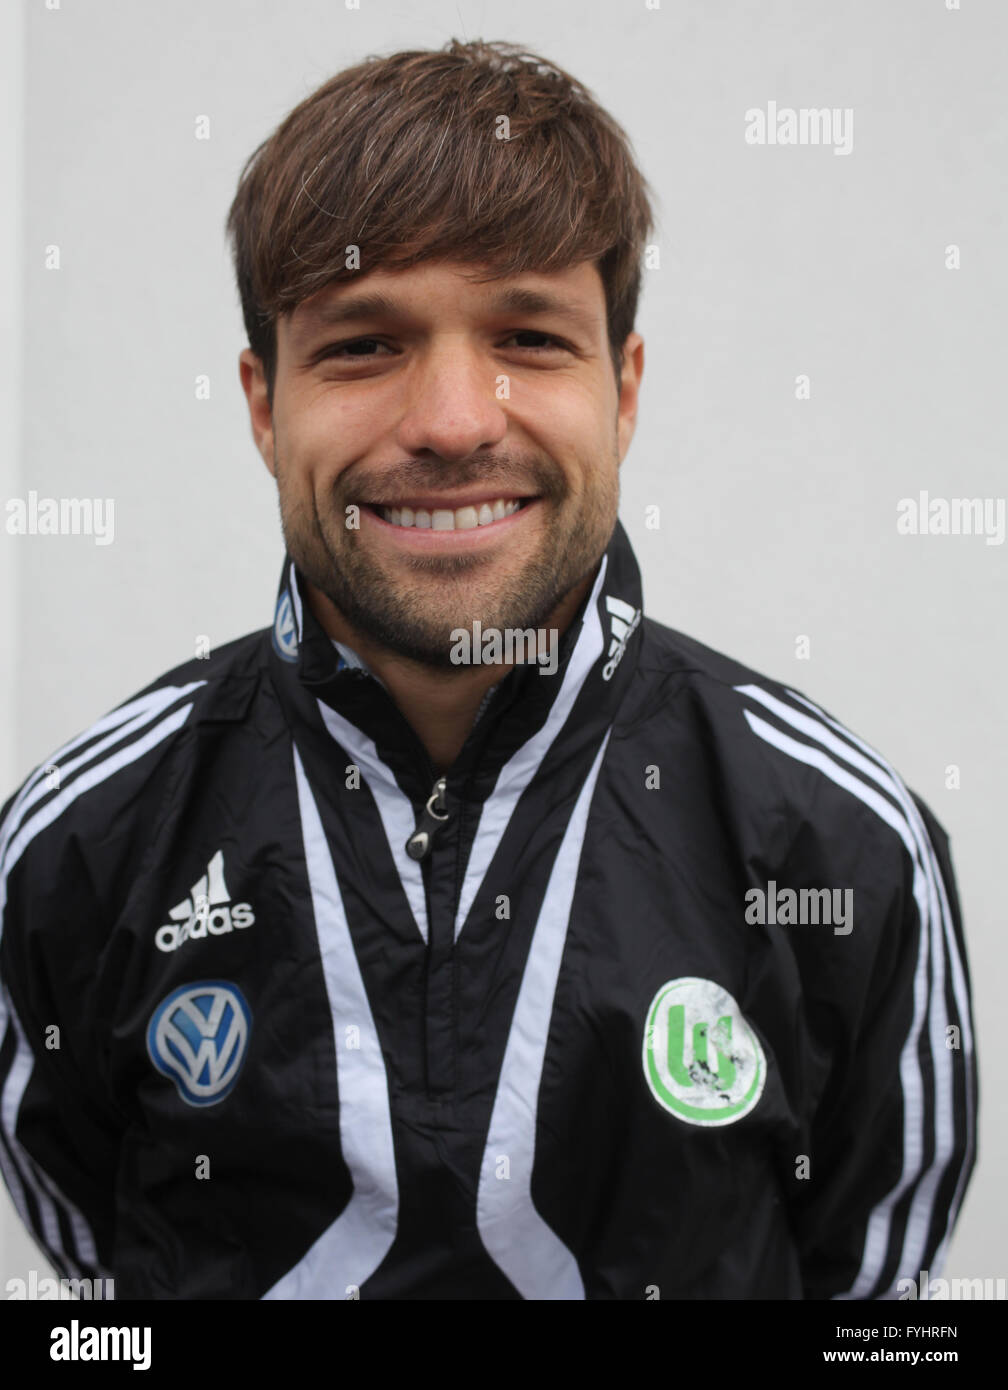 Diego (VfL Wolfsburg) Stock Photo